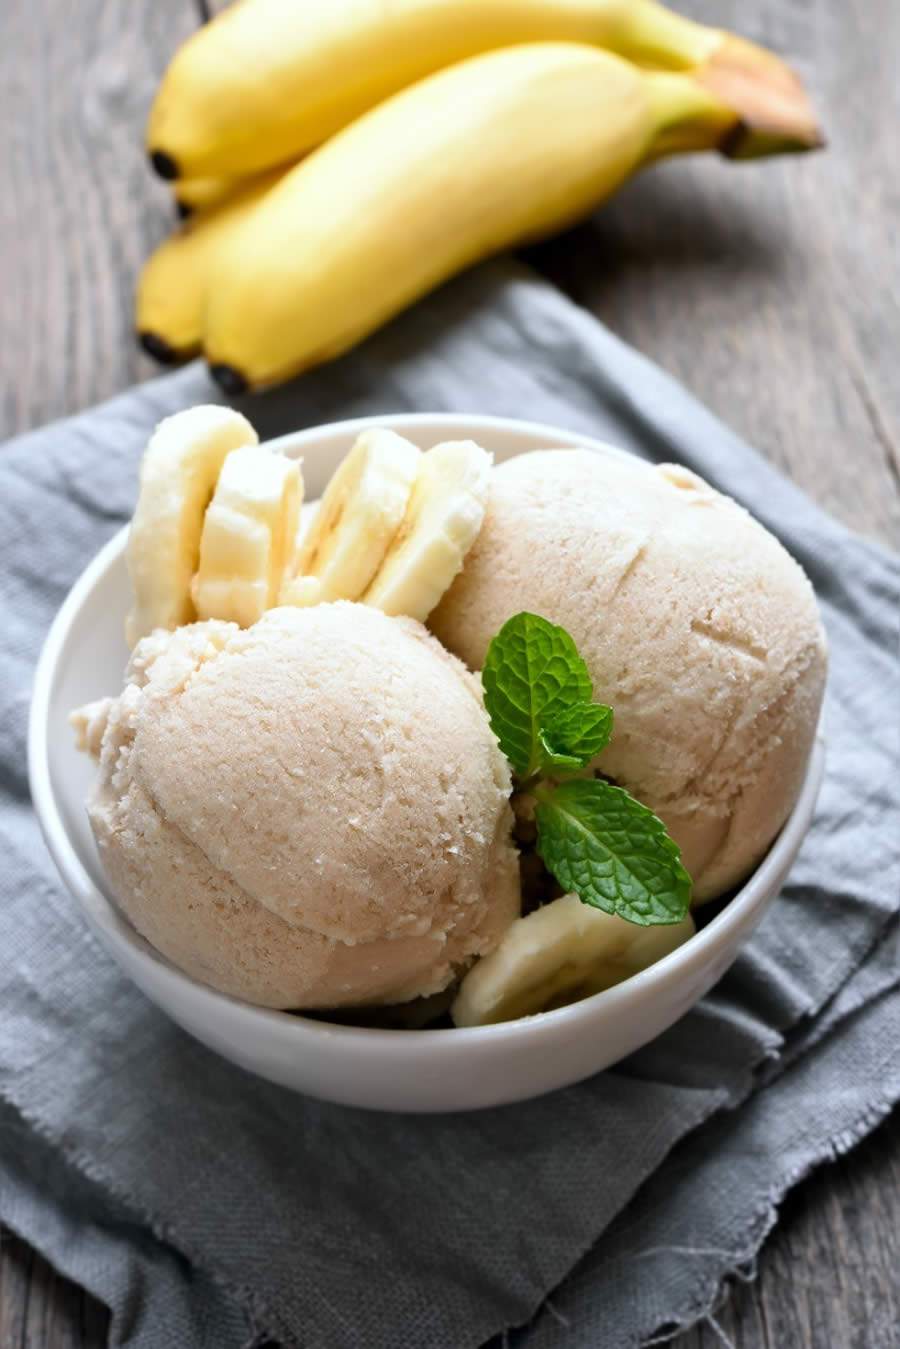 Sorvete de banana proteico é a dica do Mundo Verde para provar no Dia do Sorvete